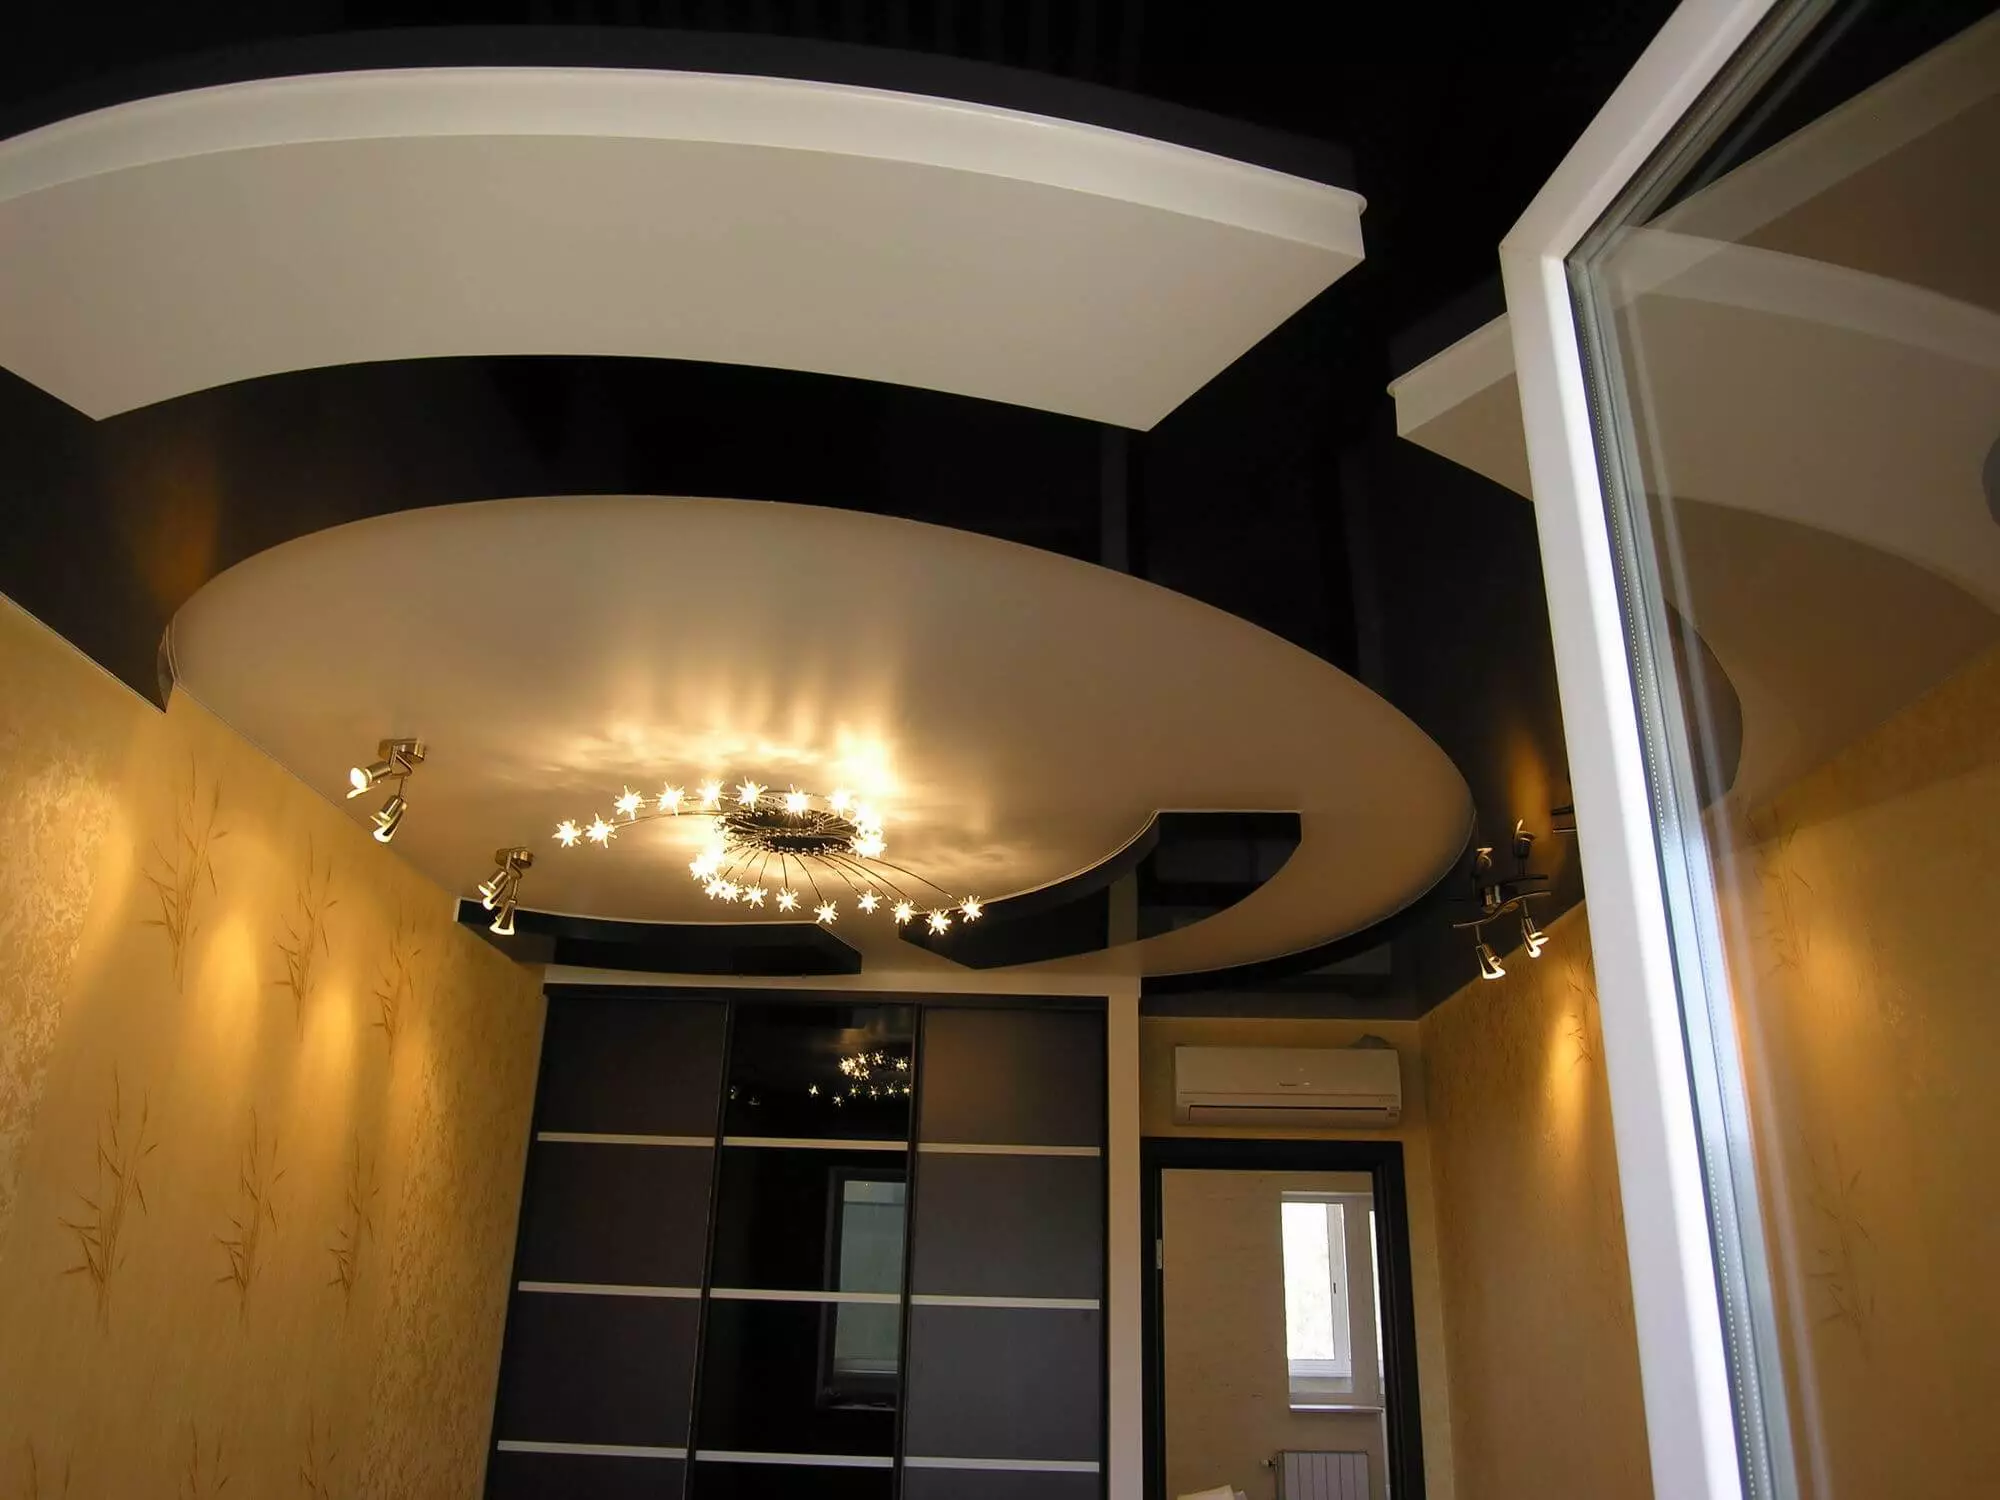 Soffitto elasticizzato nel corridoio (71 foto): design del soffitto in un corridoio stretto e lungo, opzioni con luci a punti e disegni a due livelli nell'appartamento, nelle specie nere e lucide 9270_61